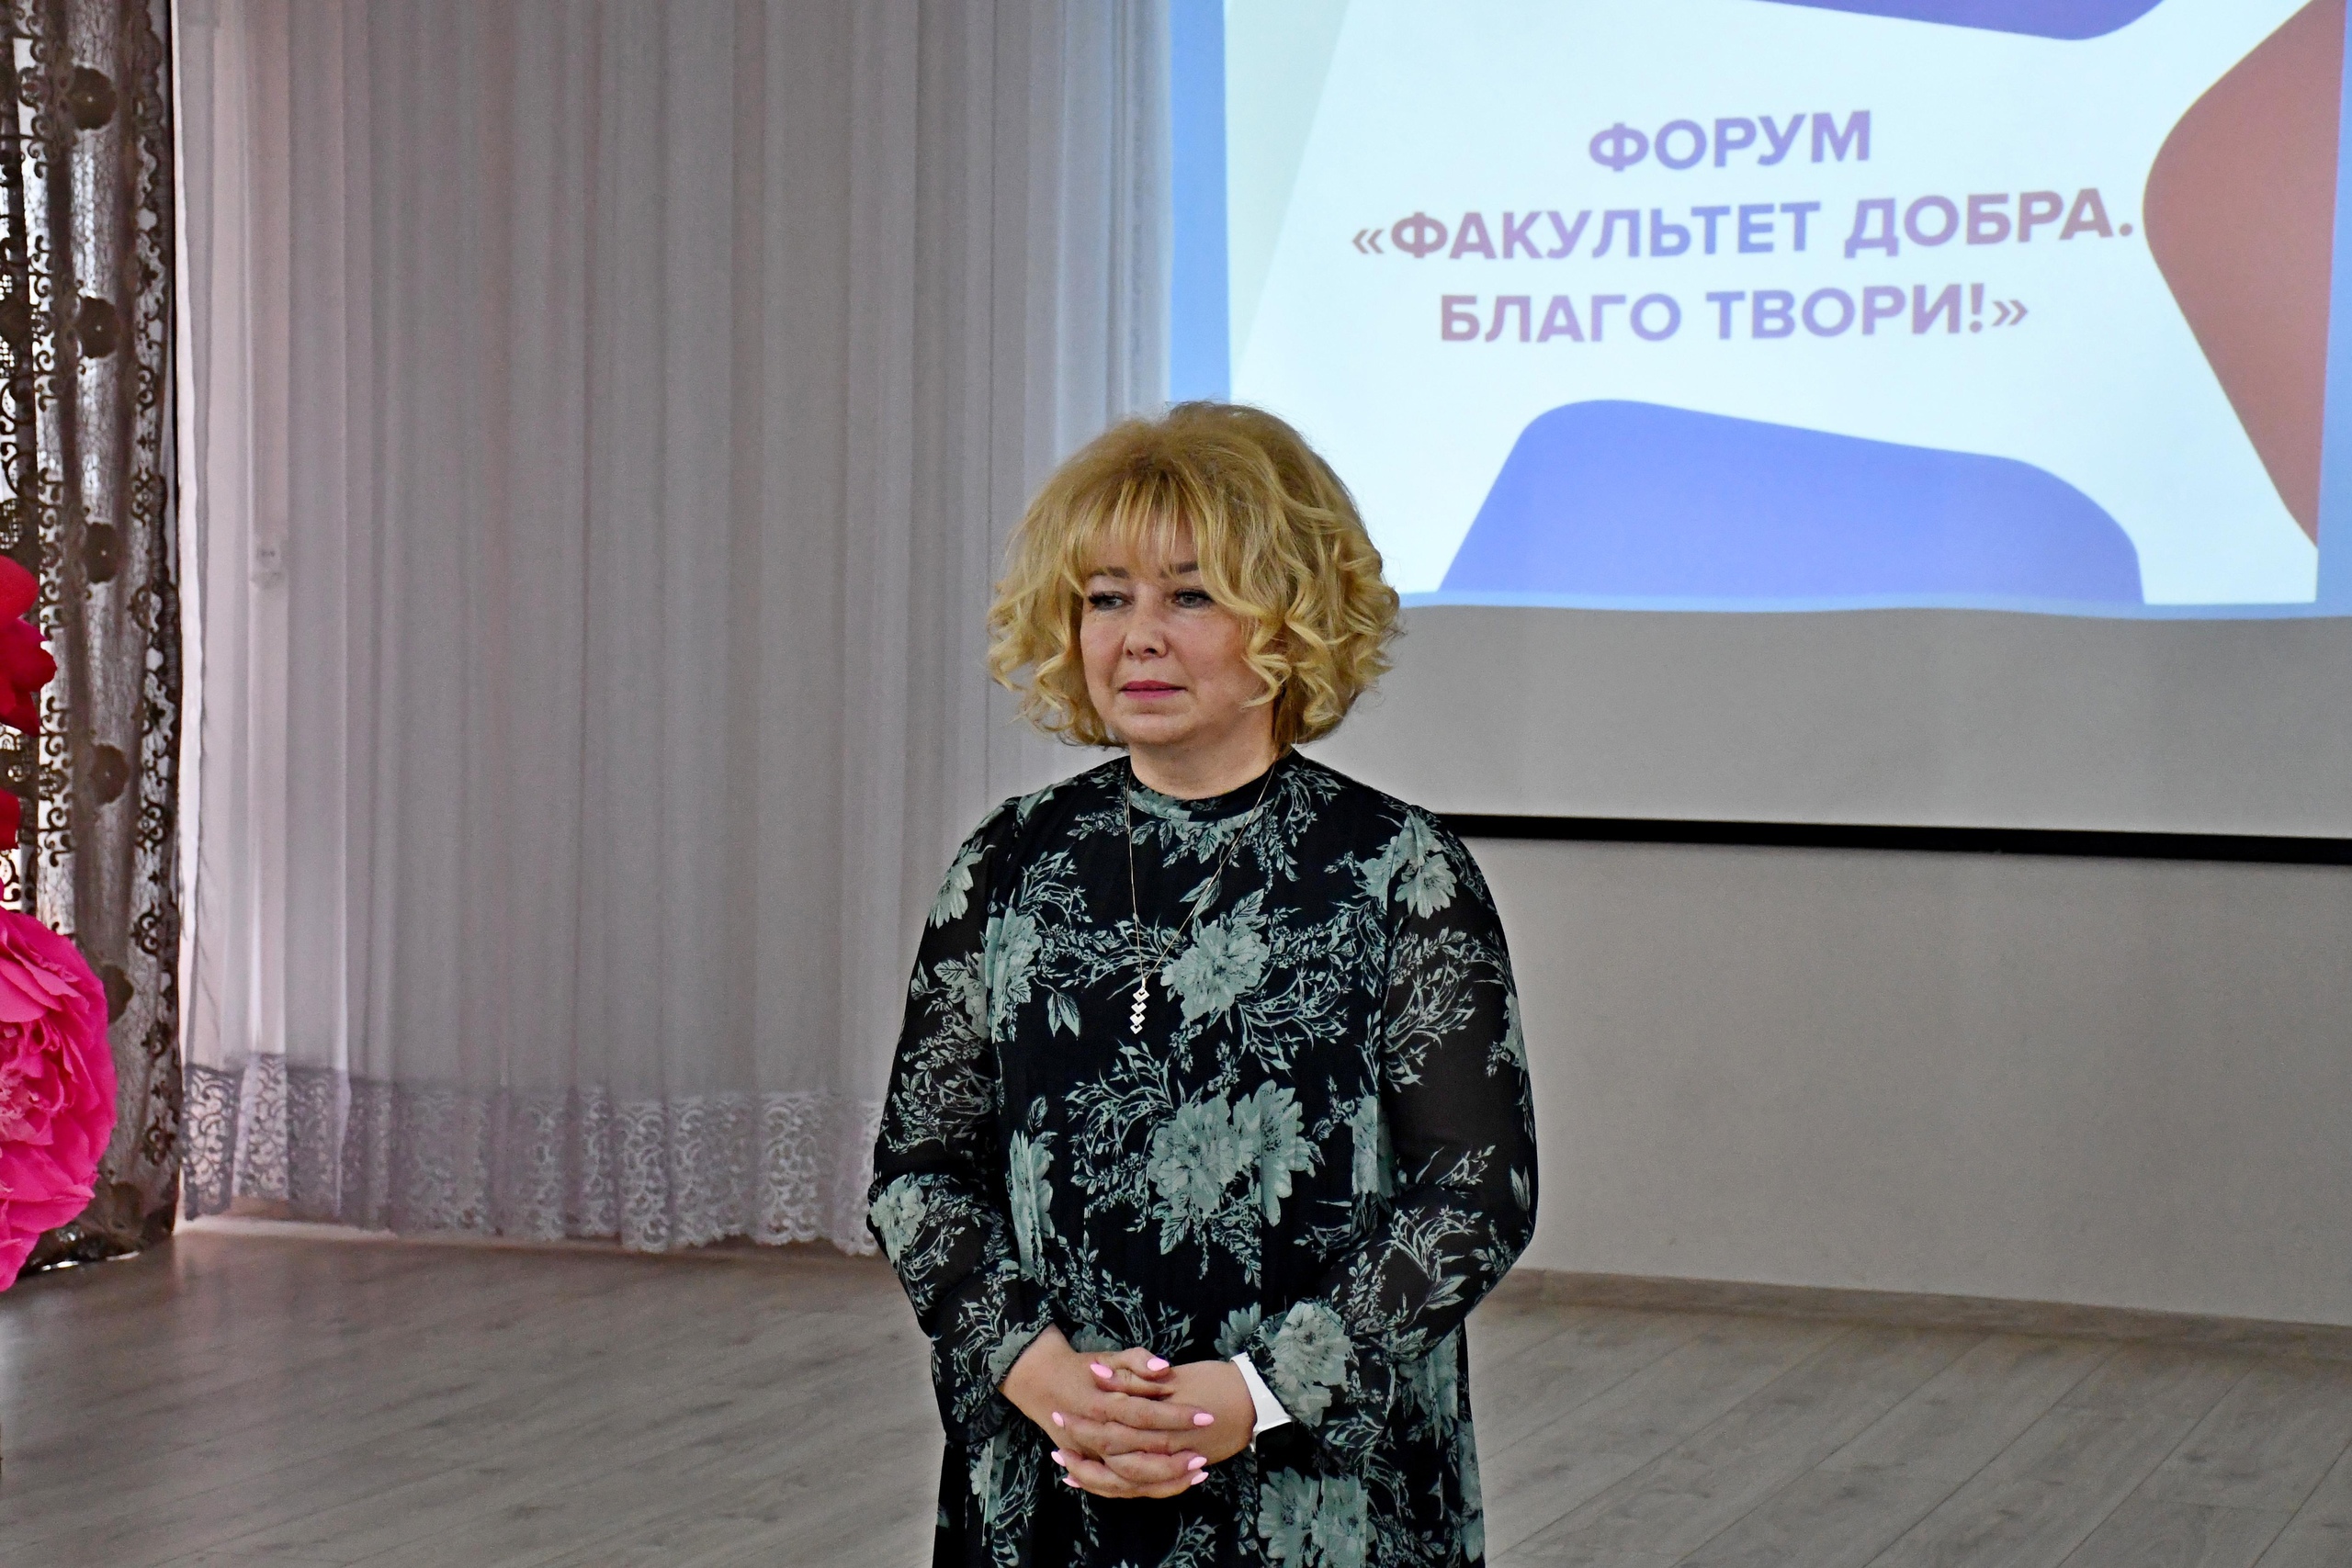 Глава города Корягина Наталья Владимировна приветствует всех участников форума.